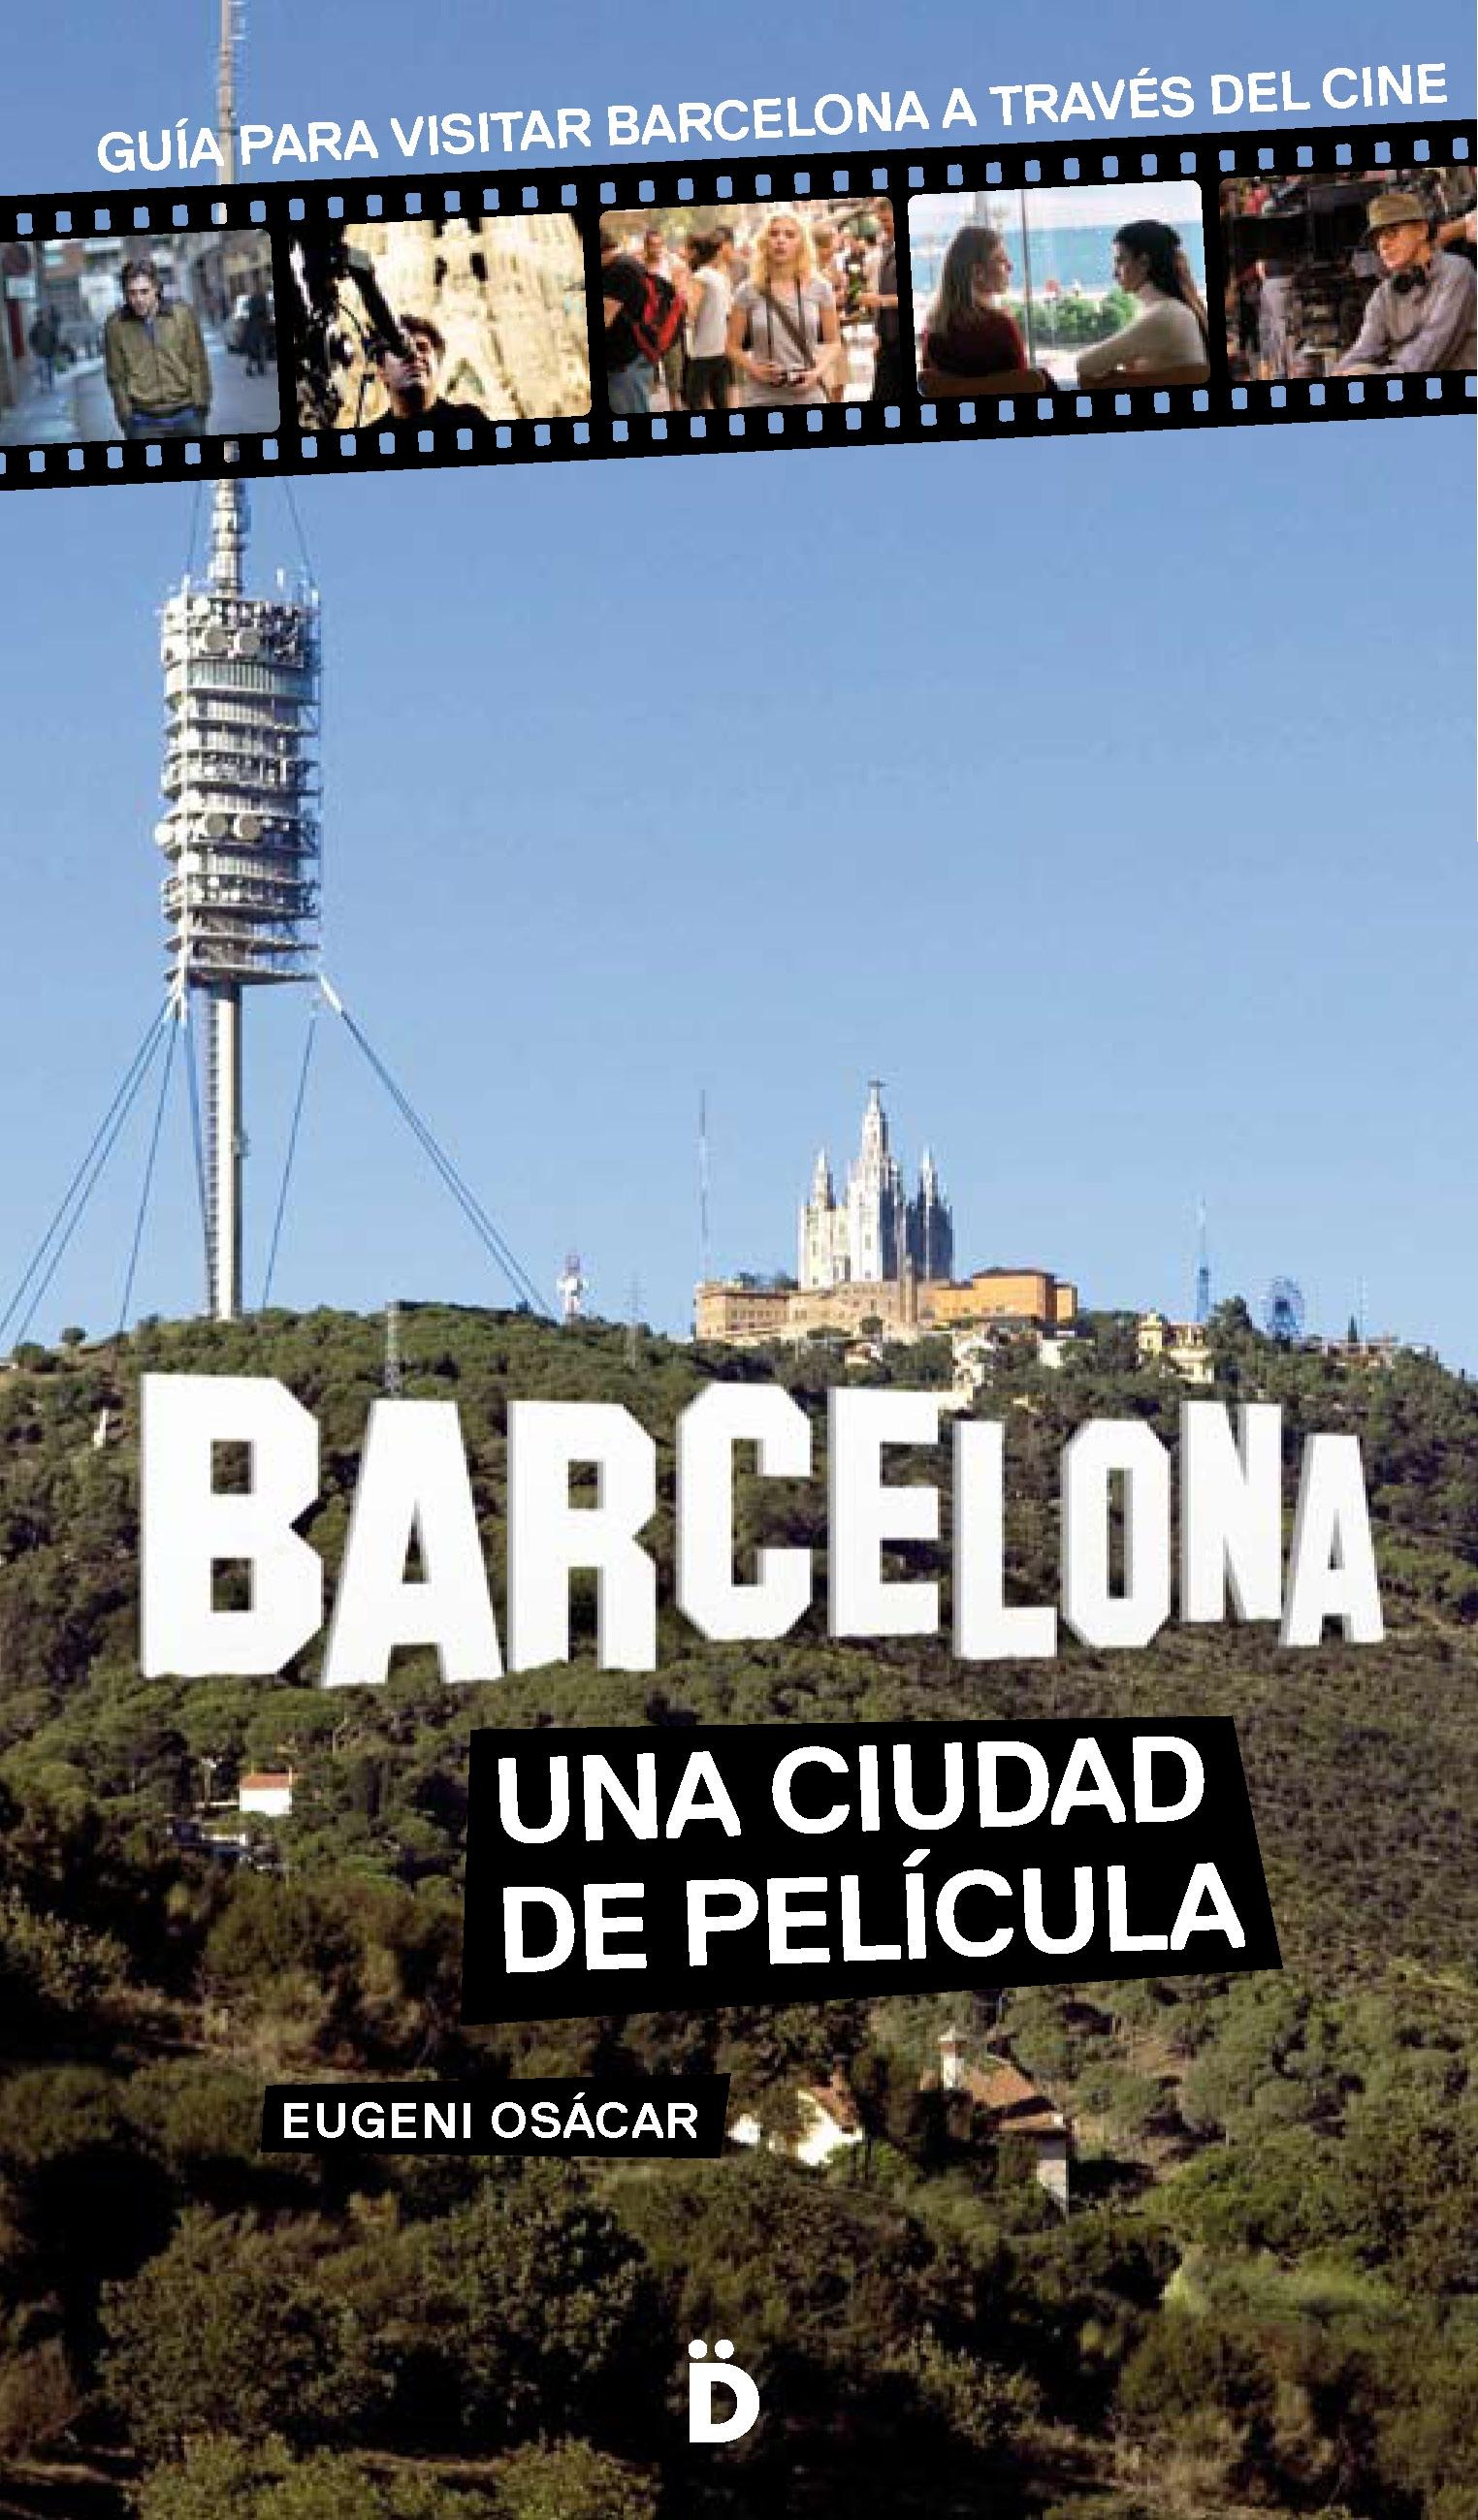 BARCELONA, UNA CIUDAD DE PELÍCULA "Guía para visitar Barcelona a través del cine"